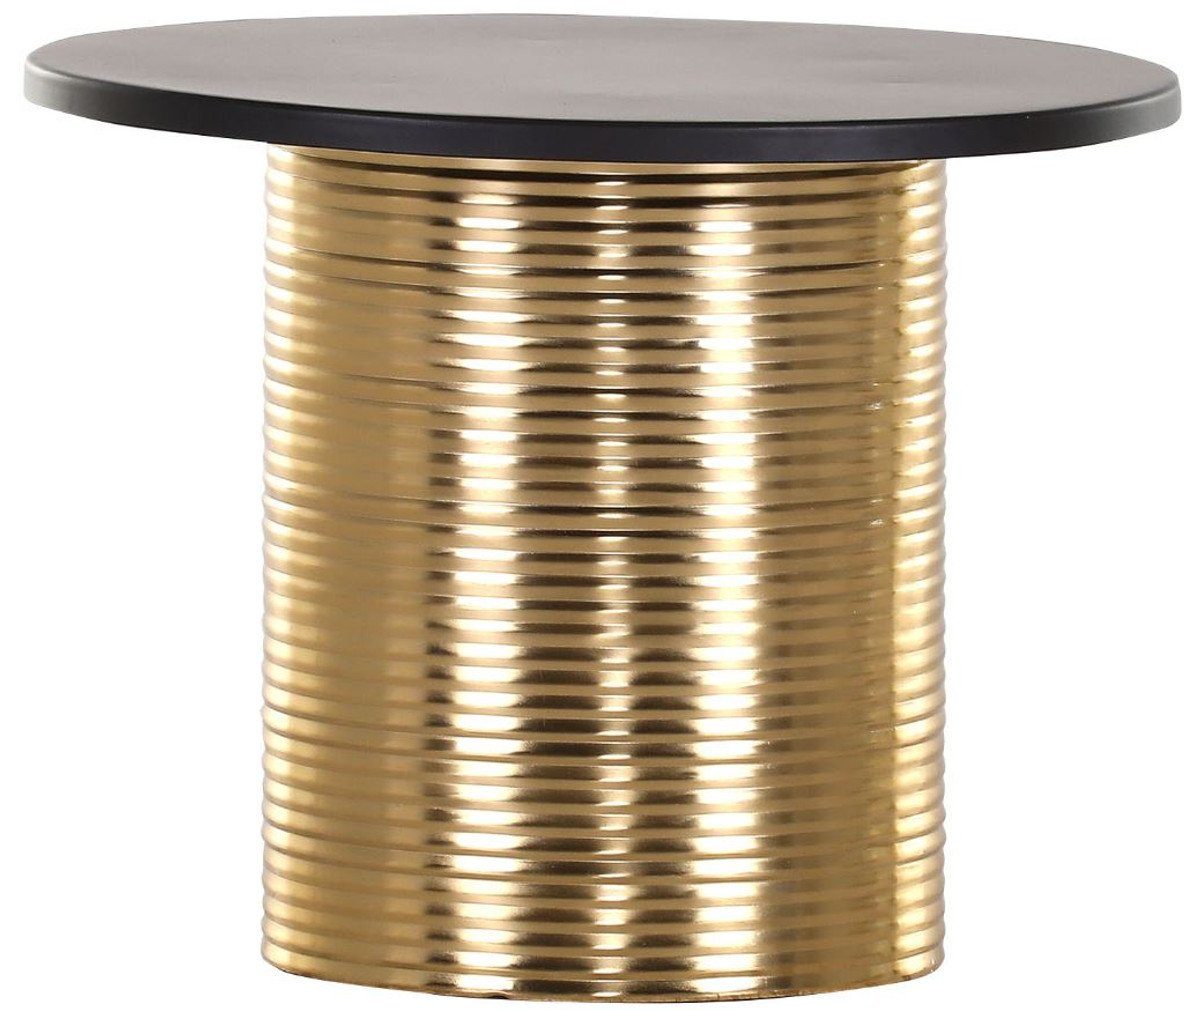 Casa Padrino Beistelltisch Luxus Beistelltisch Schwarz / Gold Ø 50 x H. 40 cm - Runder pulverbeschichteter und galvanisierter Metall Tisch - Möbel